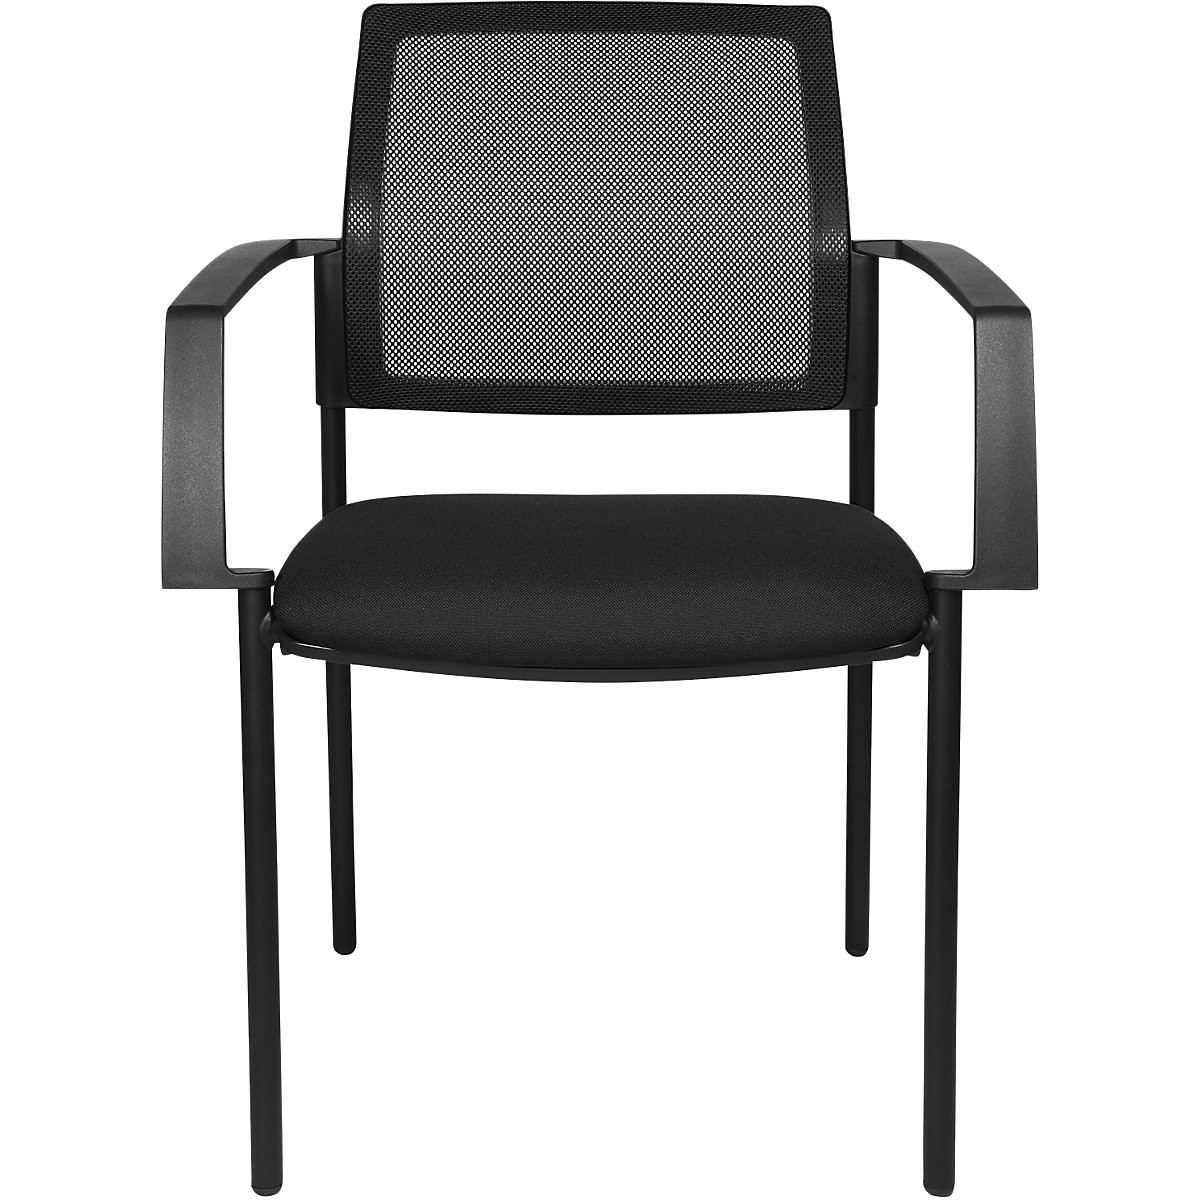 Mesh stapelstoel – Topstar, 4 stoelpoten, VE = 2 stuks, zitting zwart, frame zwart-7